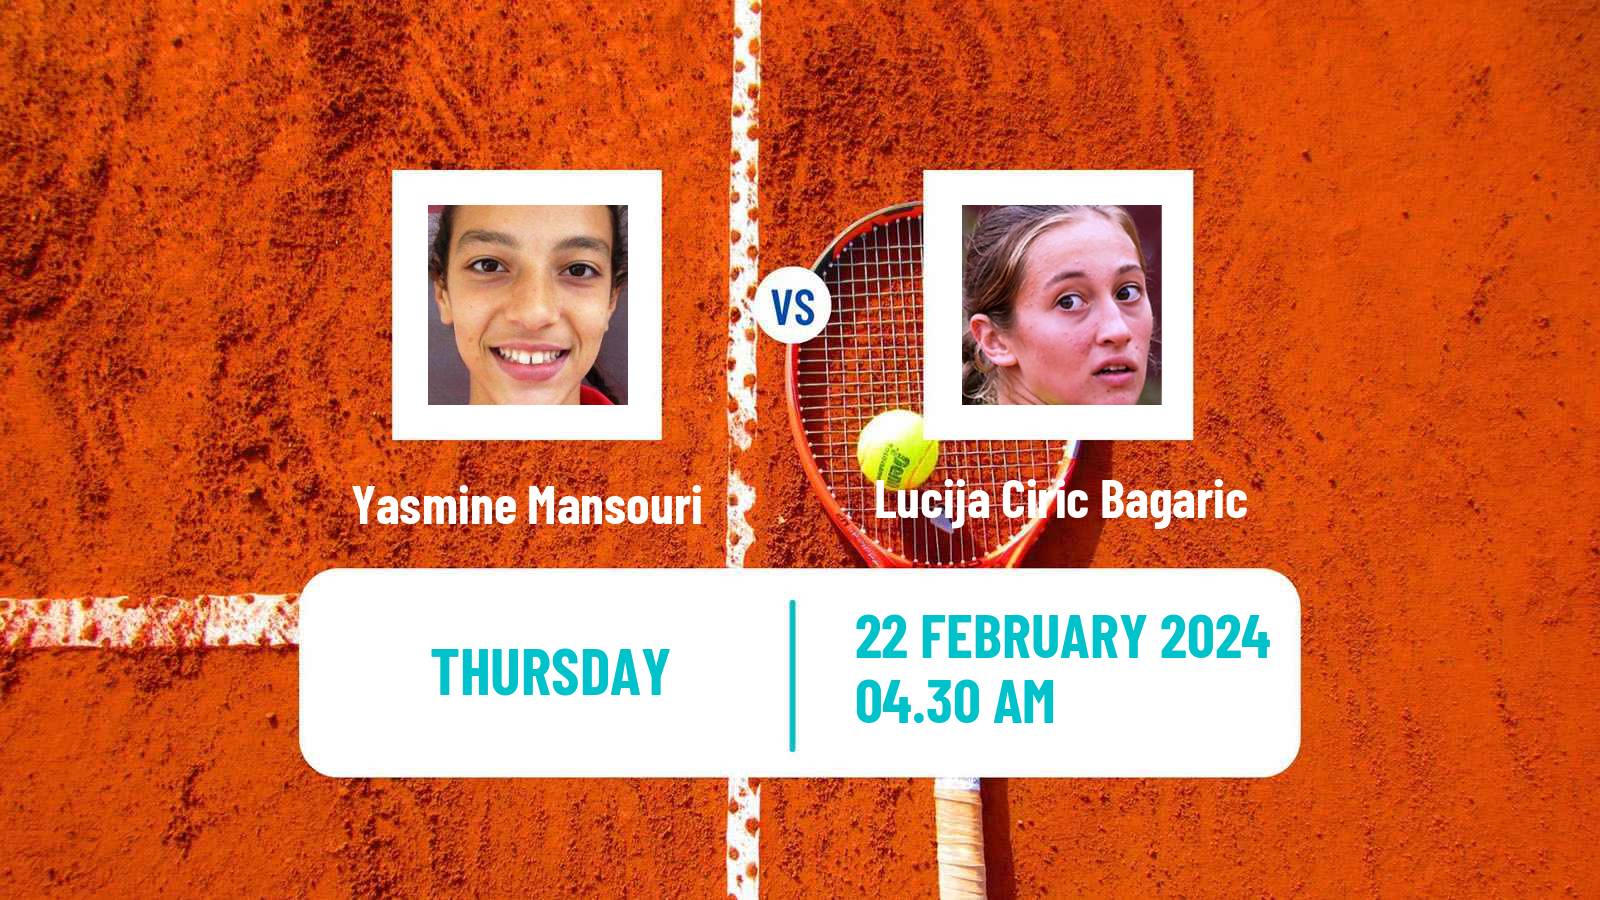 Tennis ITF W35 Hammamet 2 Women Yasmine Mansouri - Lucija Ciric Bagaric